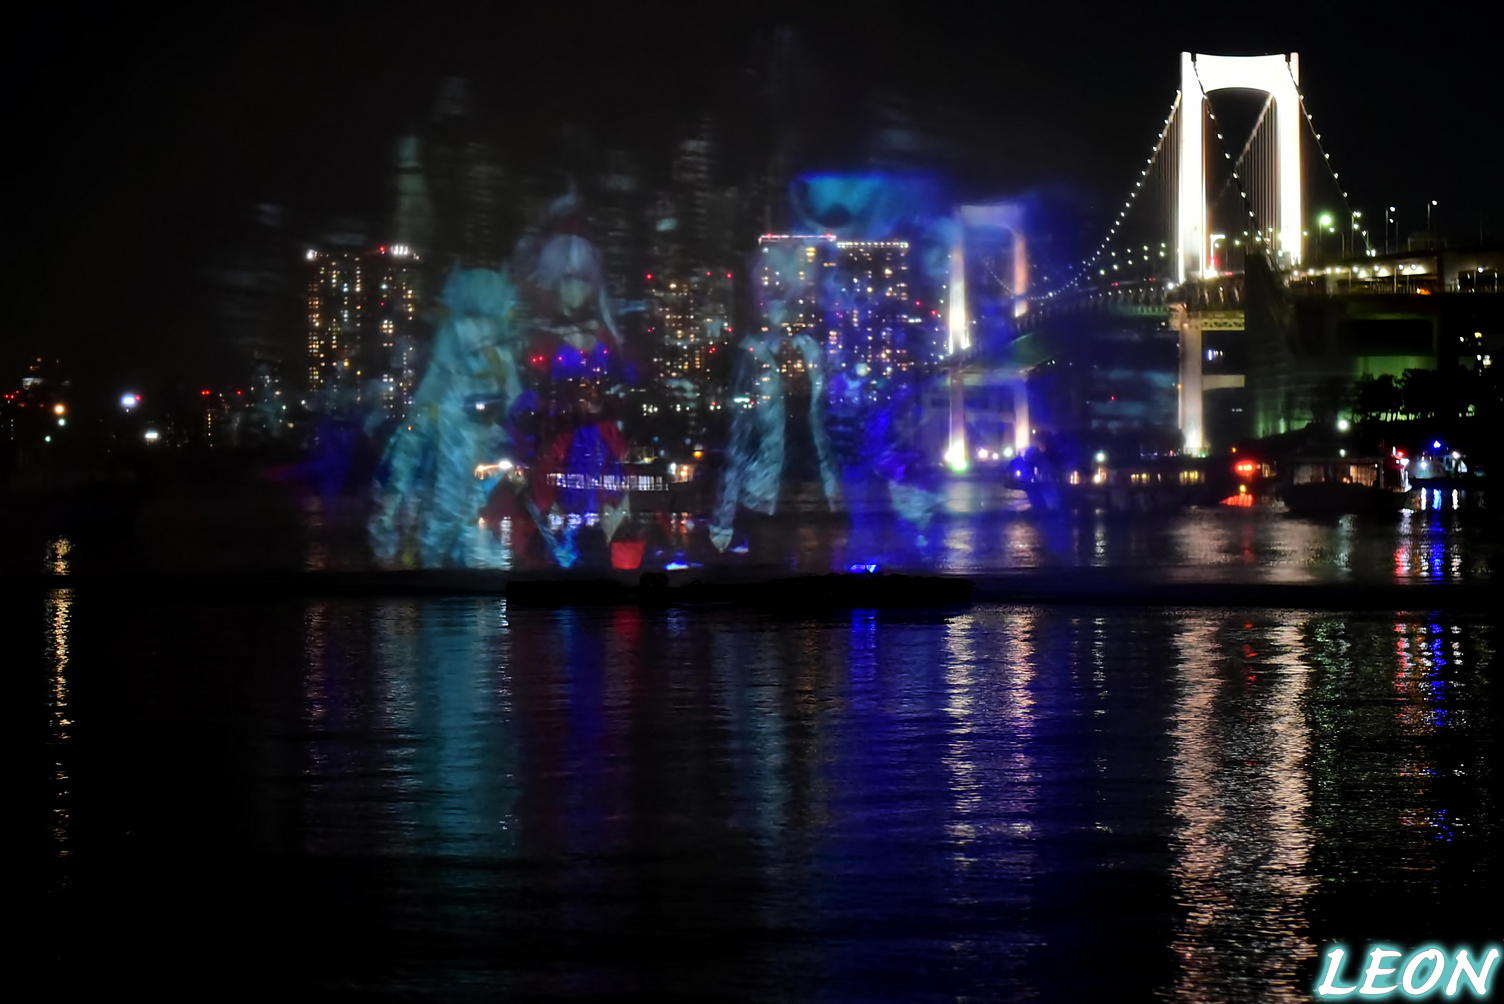 Leon Twitter પર 先週土曜日に行われたhokusai Tokyo 水辺を彩る江戸祭 Fgoイベントに行ってきました 水上プロジェクションマッピングは思った以上に撮影が難しかったです T Co Wrhjb2kuok Twitter